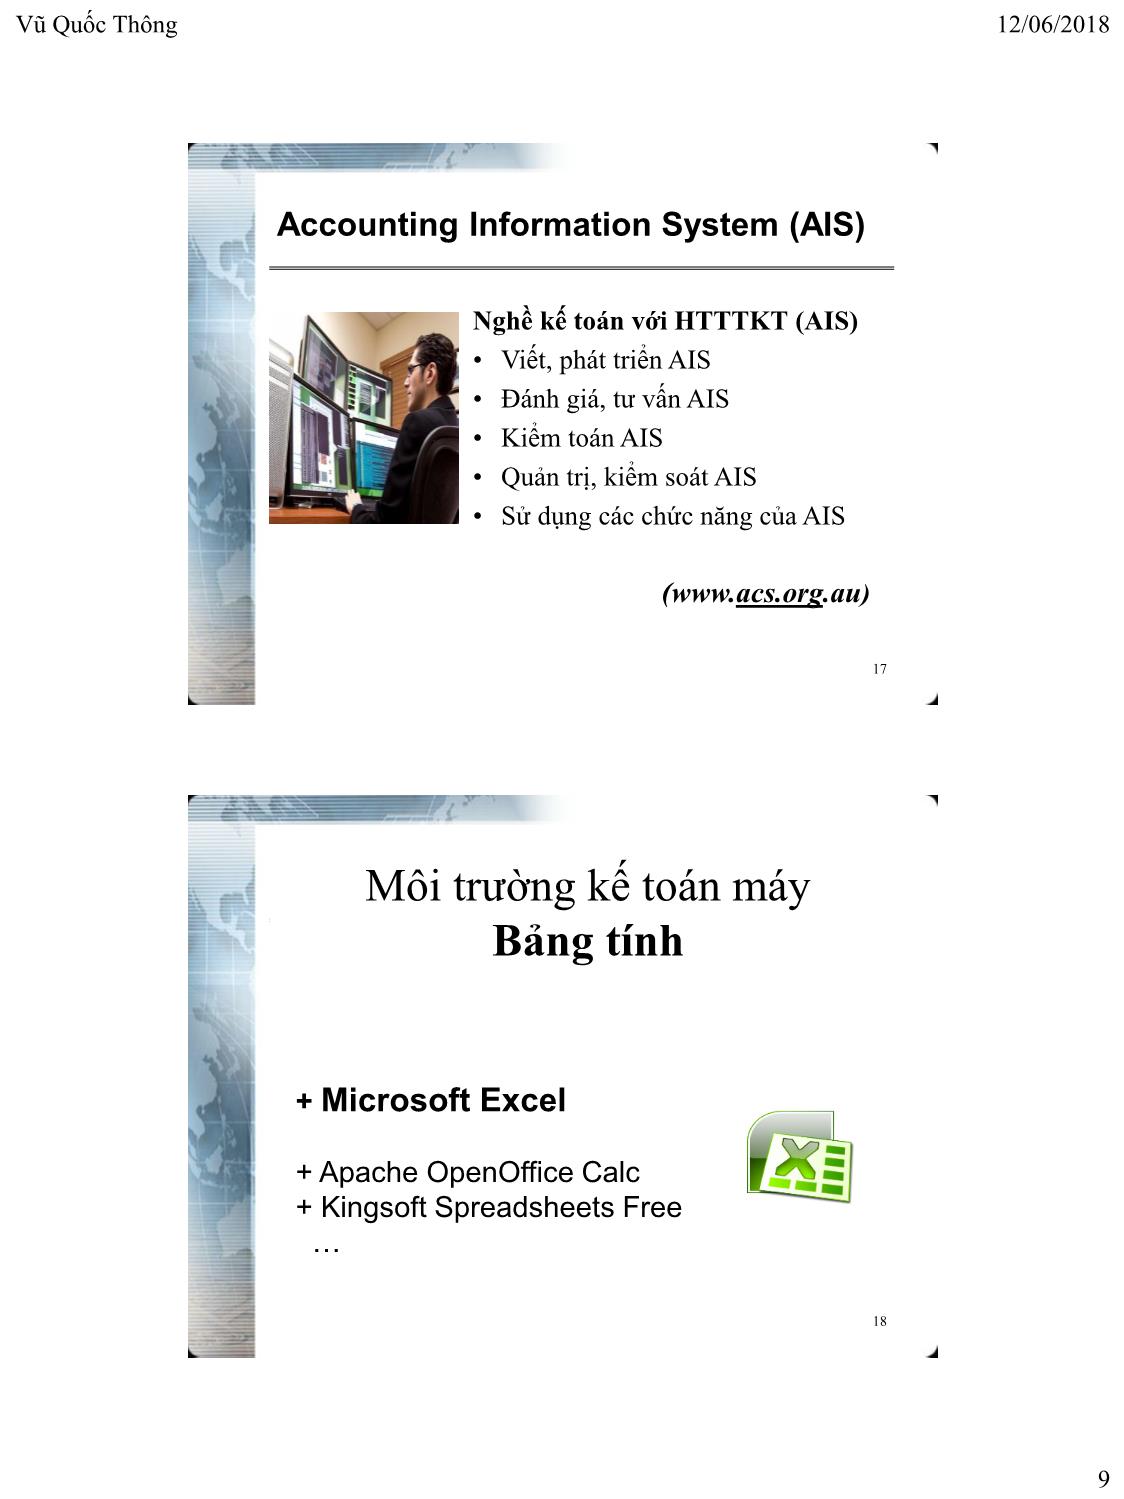 Bài giảng Hệ thống thông tin kế toán 1 - Chương 1: Tổng quan về hệ thống thông tin kế toán - Vũ Quốc Thông trang 9